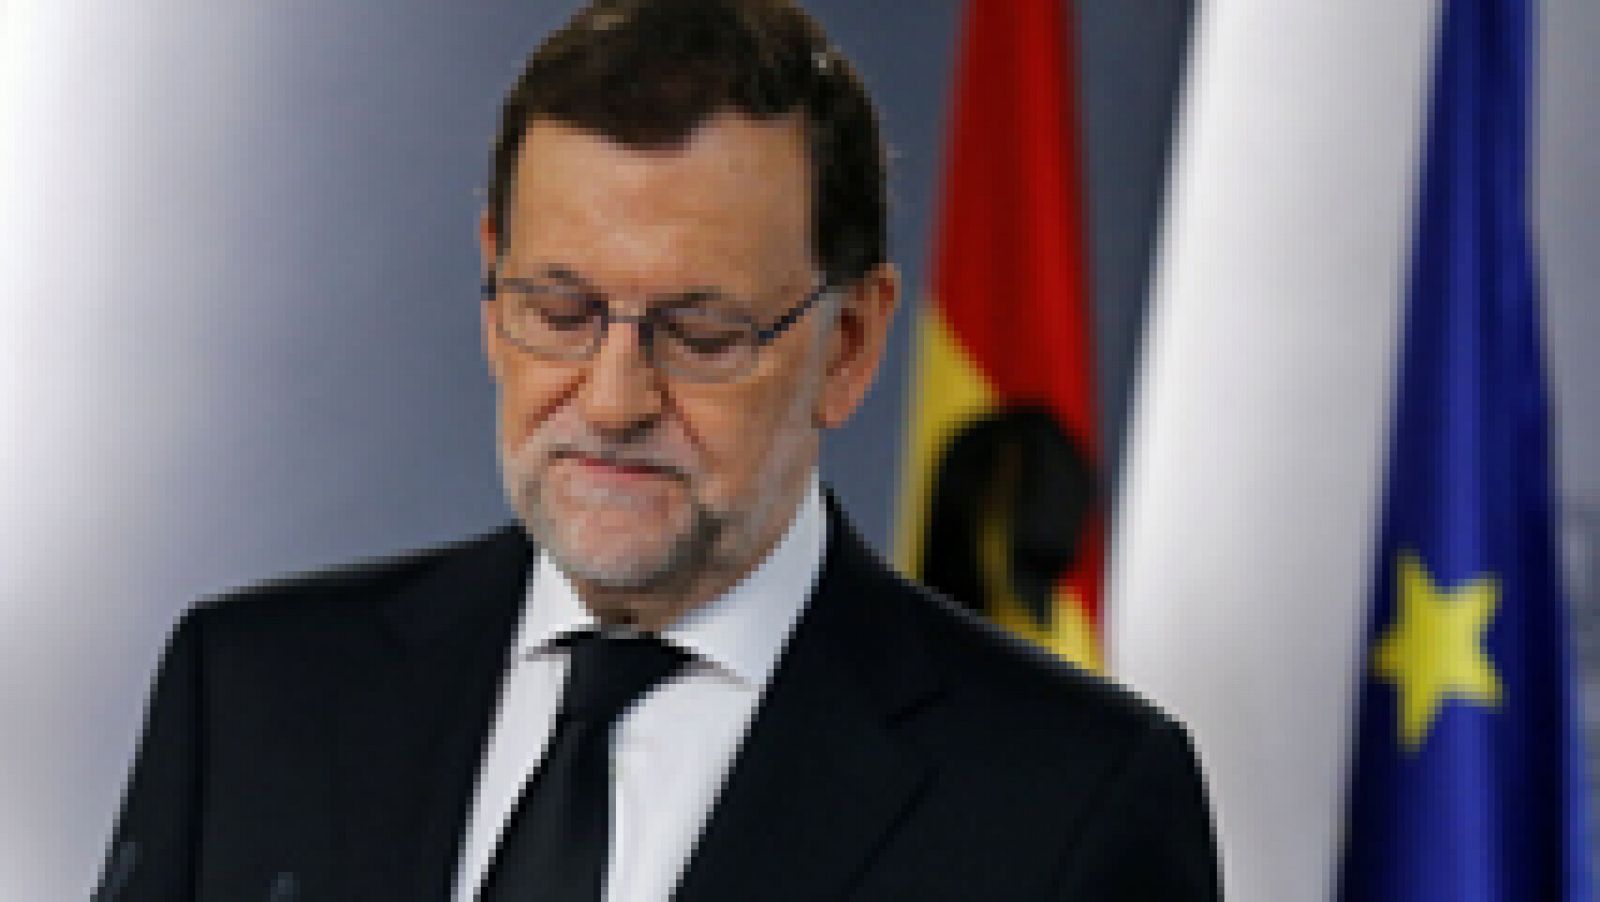 Comparecencia íntegra de Rajoy tras los atentados de Niza